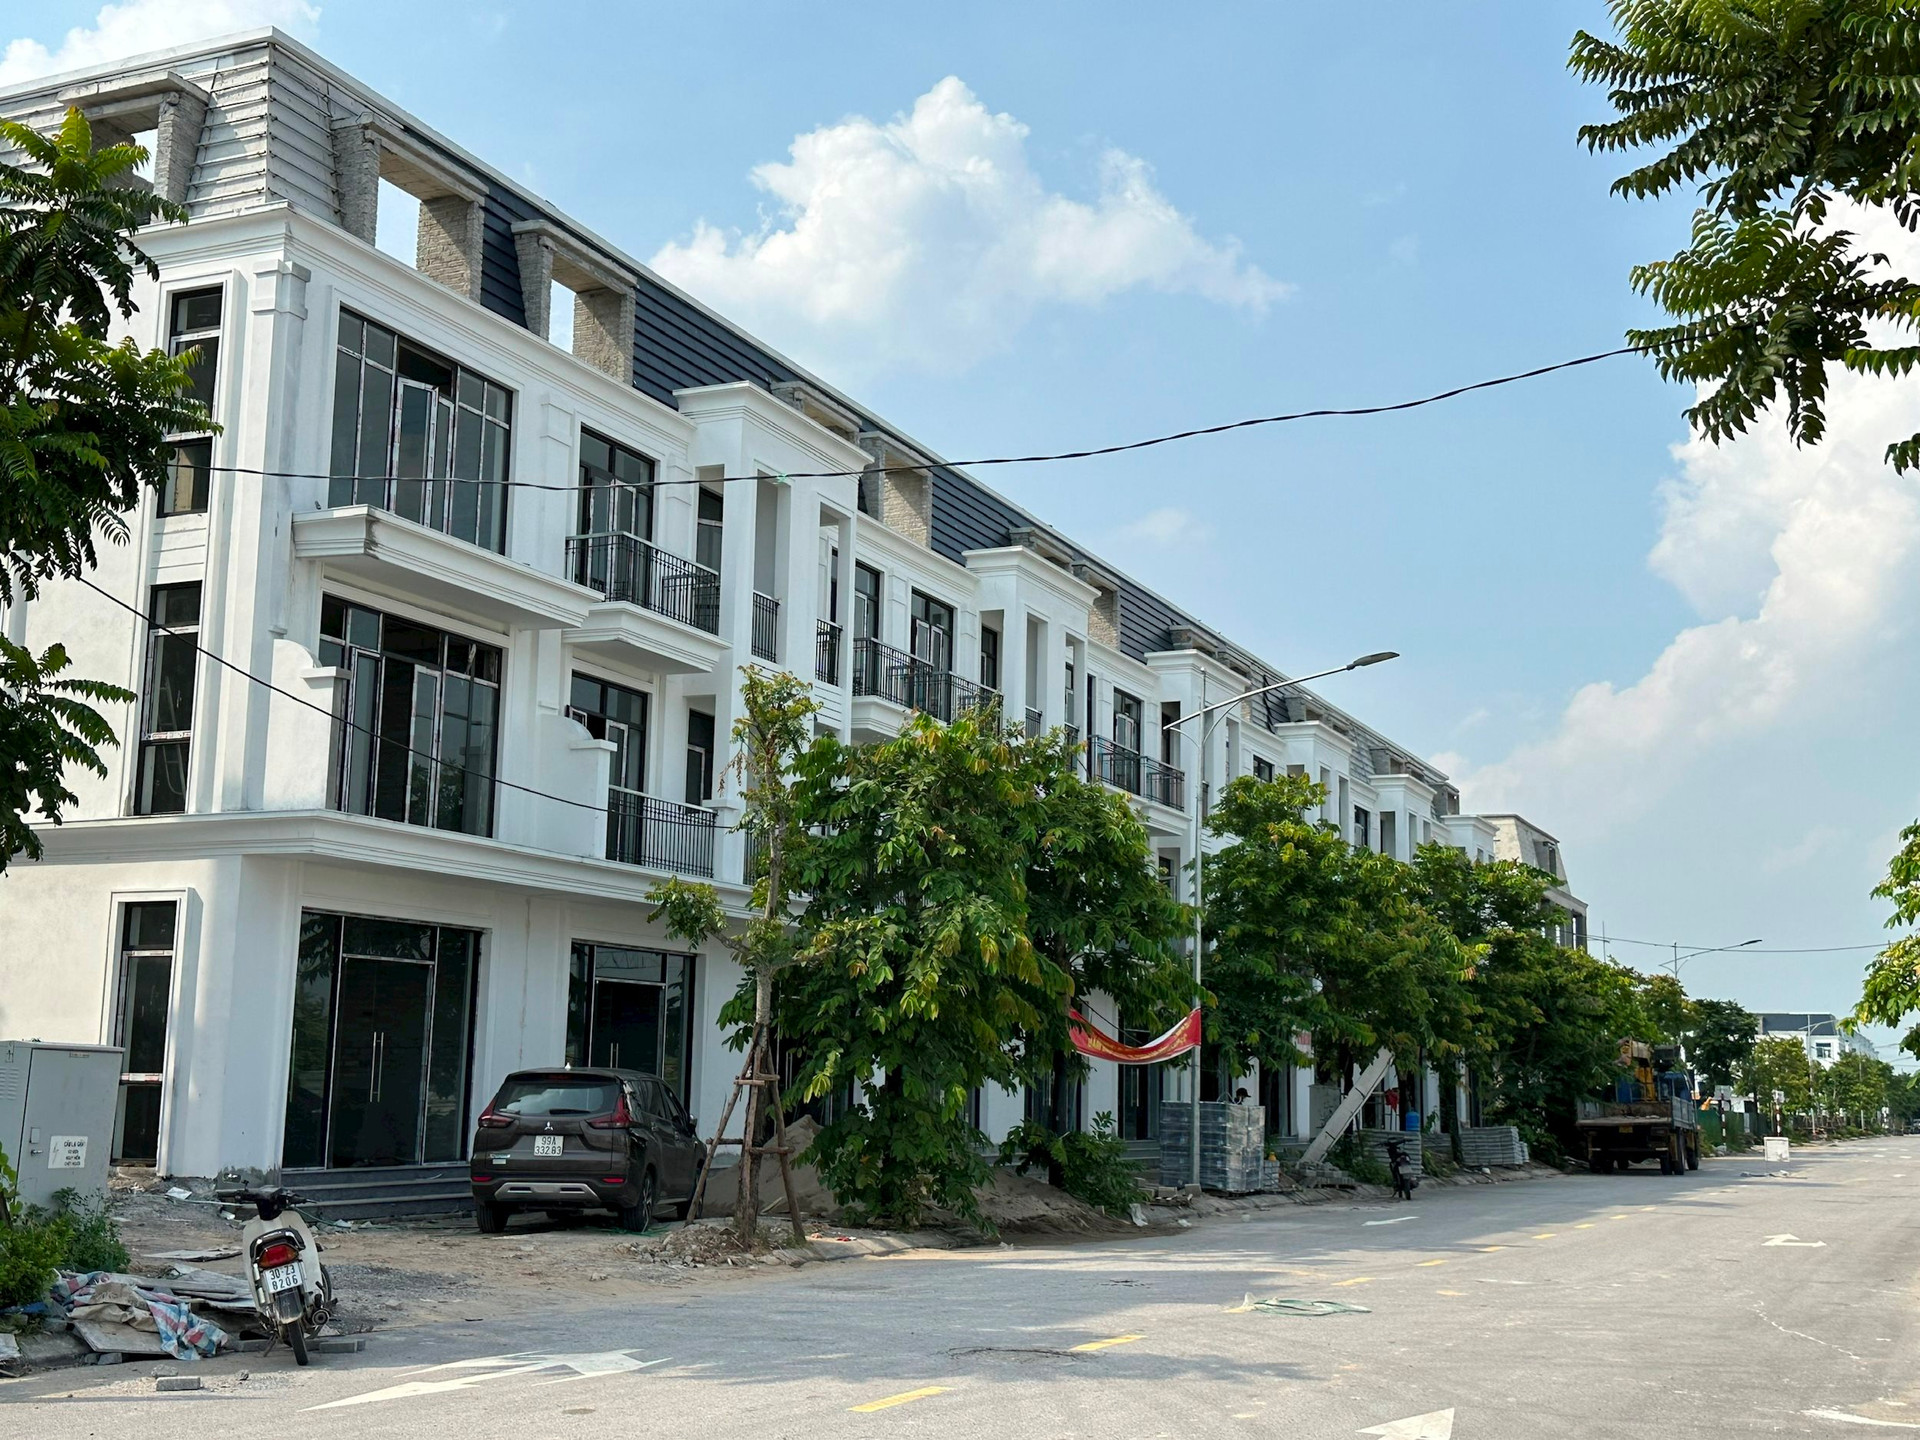 Một dự án bất động sản tại Hà Nội từng gây xôn xao khi mở bán trả giá công khai, nay giá thấp hơn gần 20%, môi giới chào mời: “Sẽ tăng gấp 2 lần trong 3 năm” - Ảnh 2.